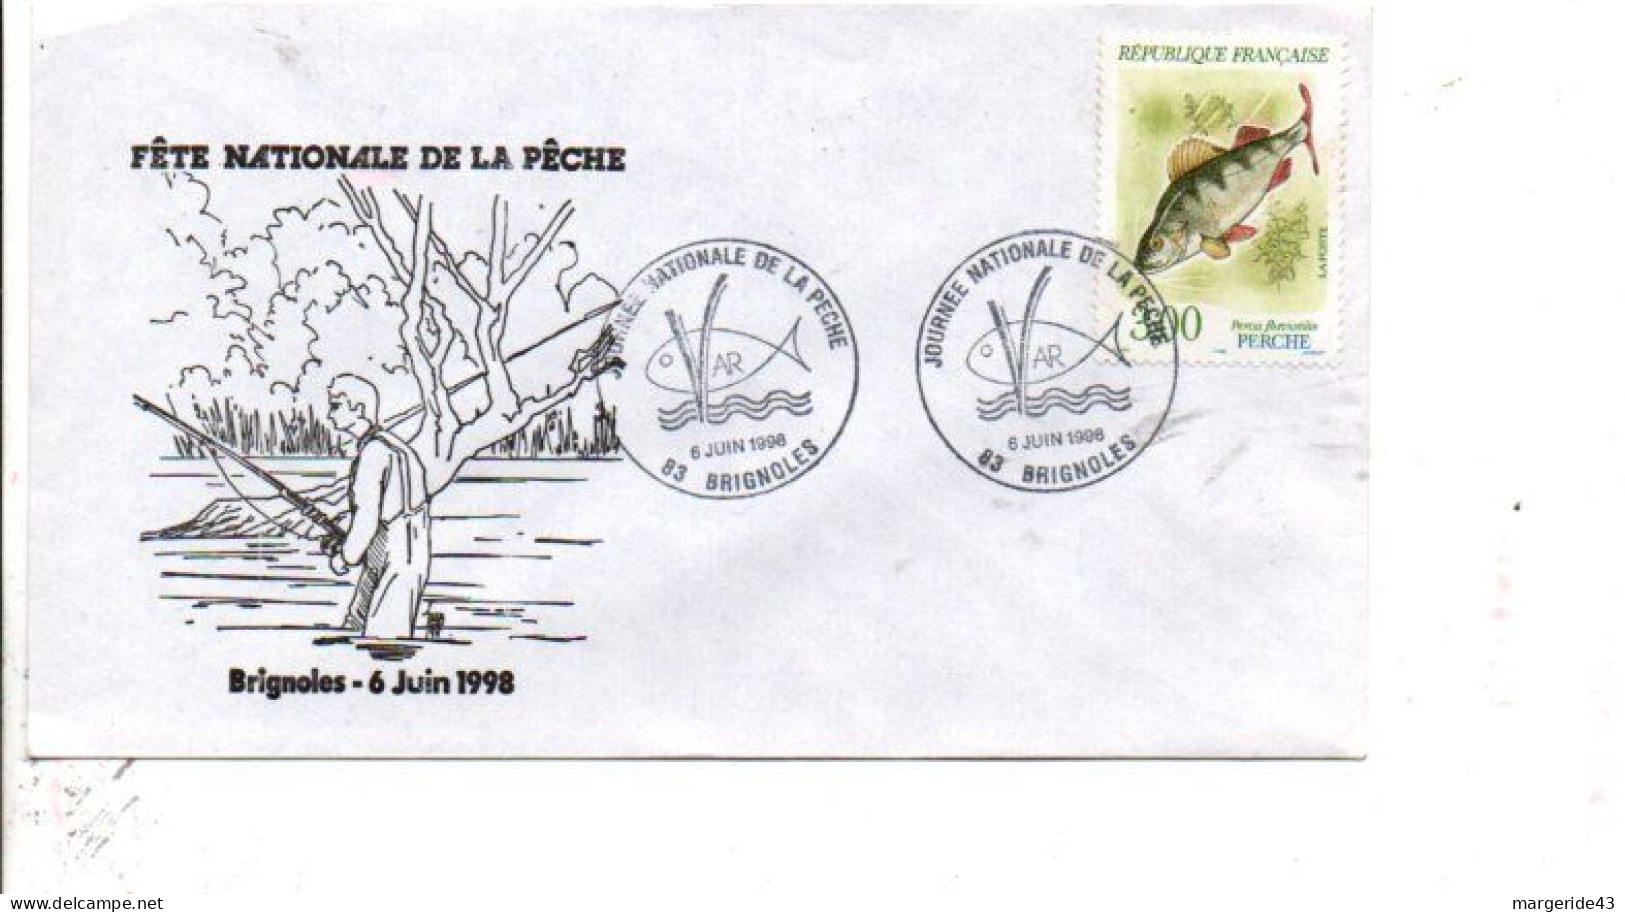 JOURNEE NATIONALE DE LA PECHE 1998 - Cachets Commémoratifs